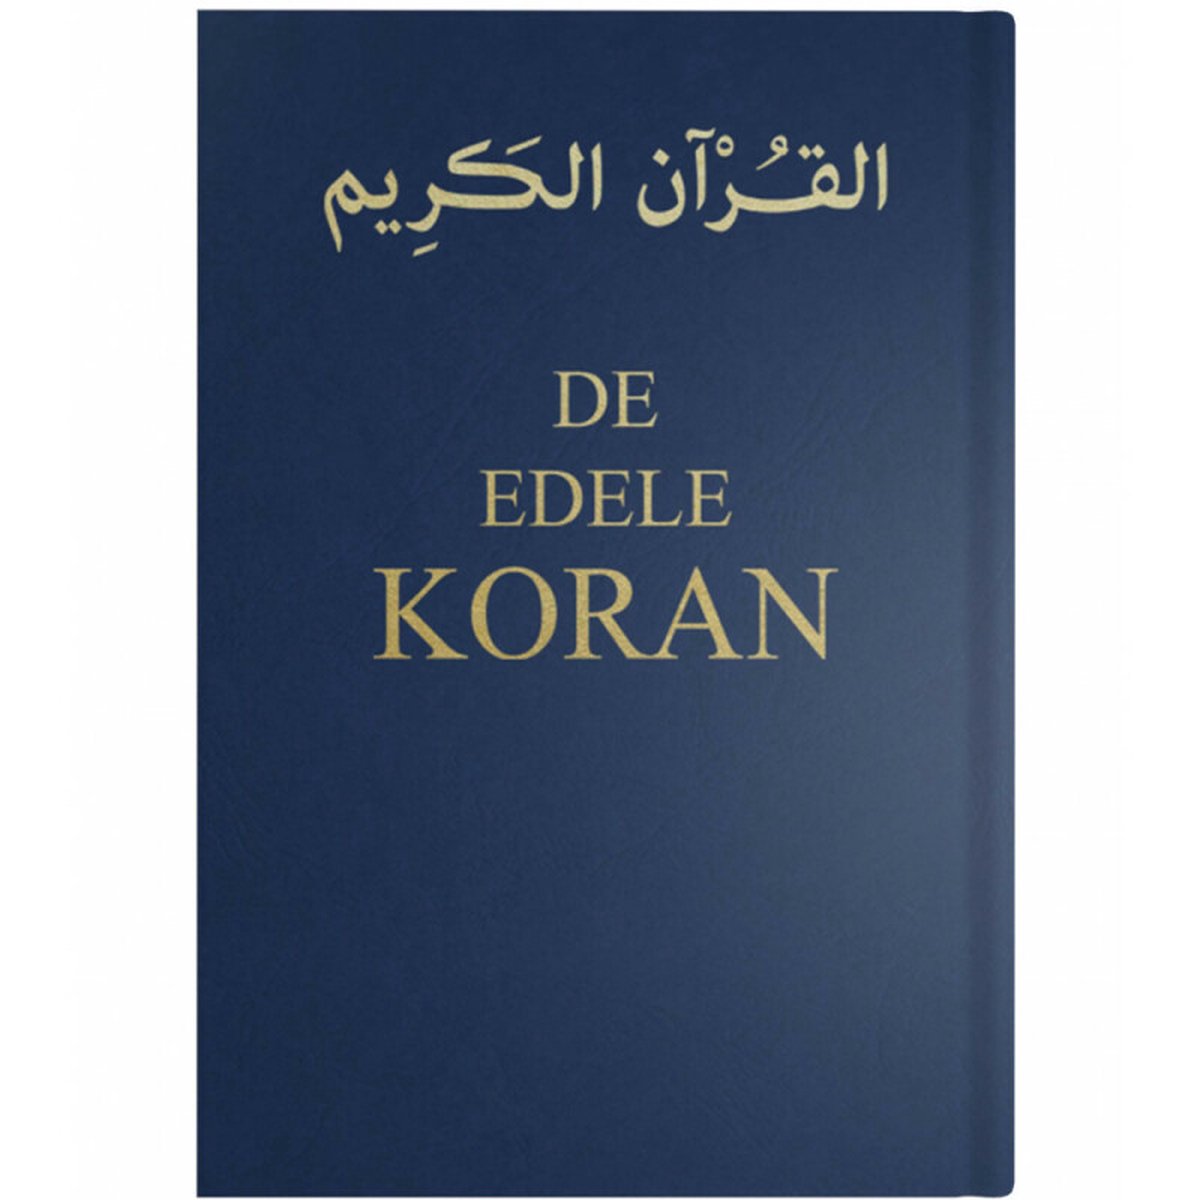 De Edele Koran - Sofjan S. Siregar